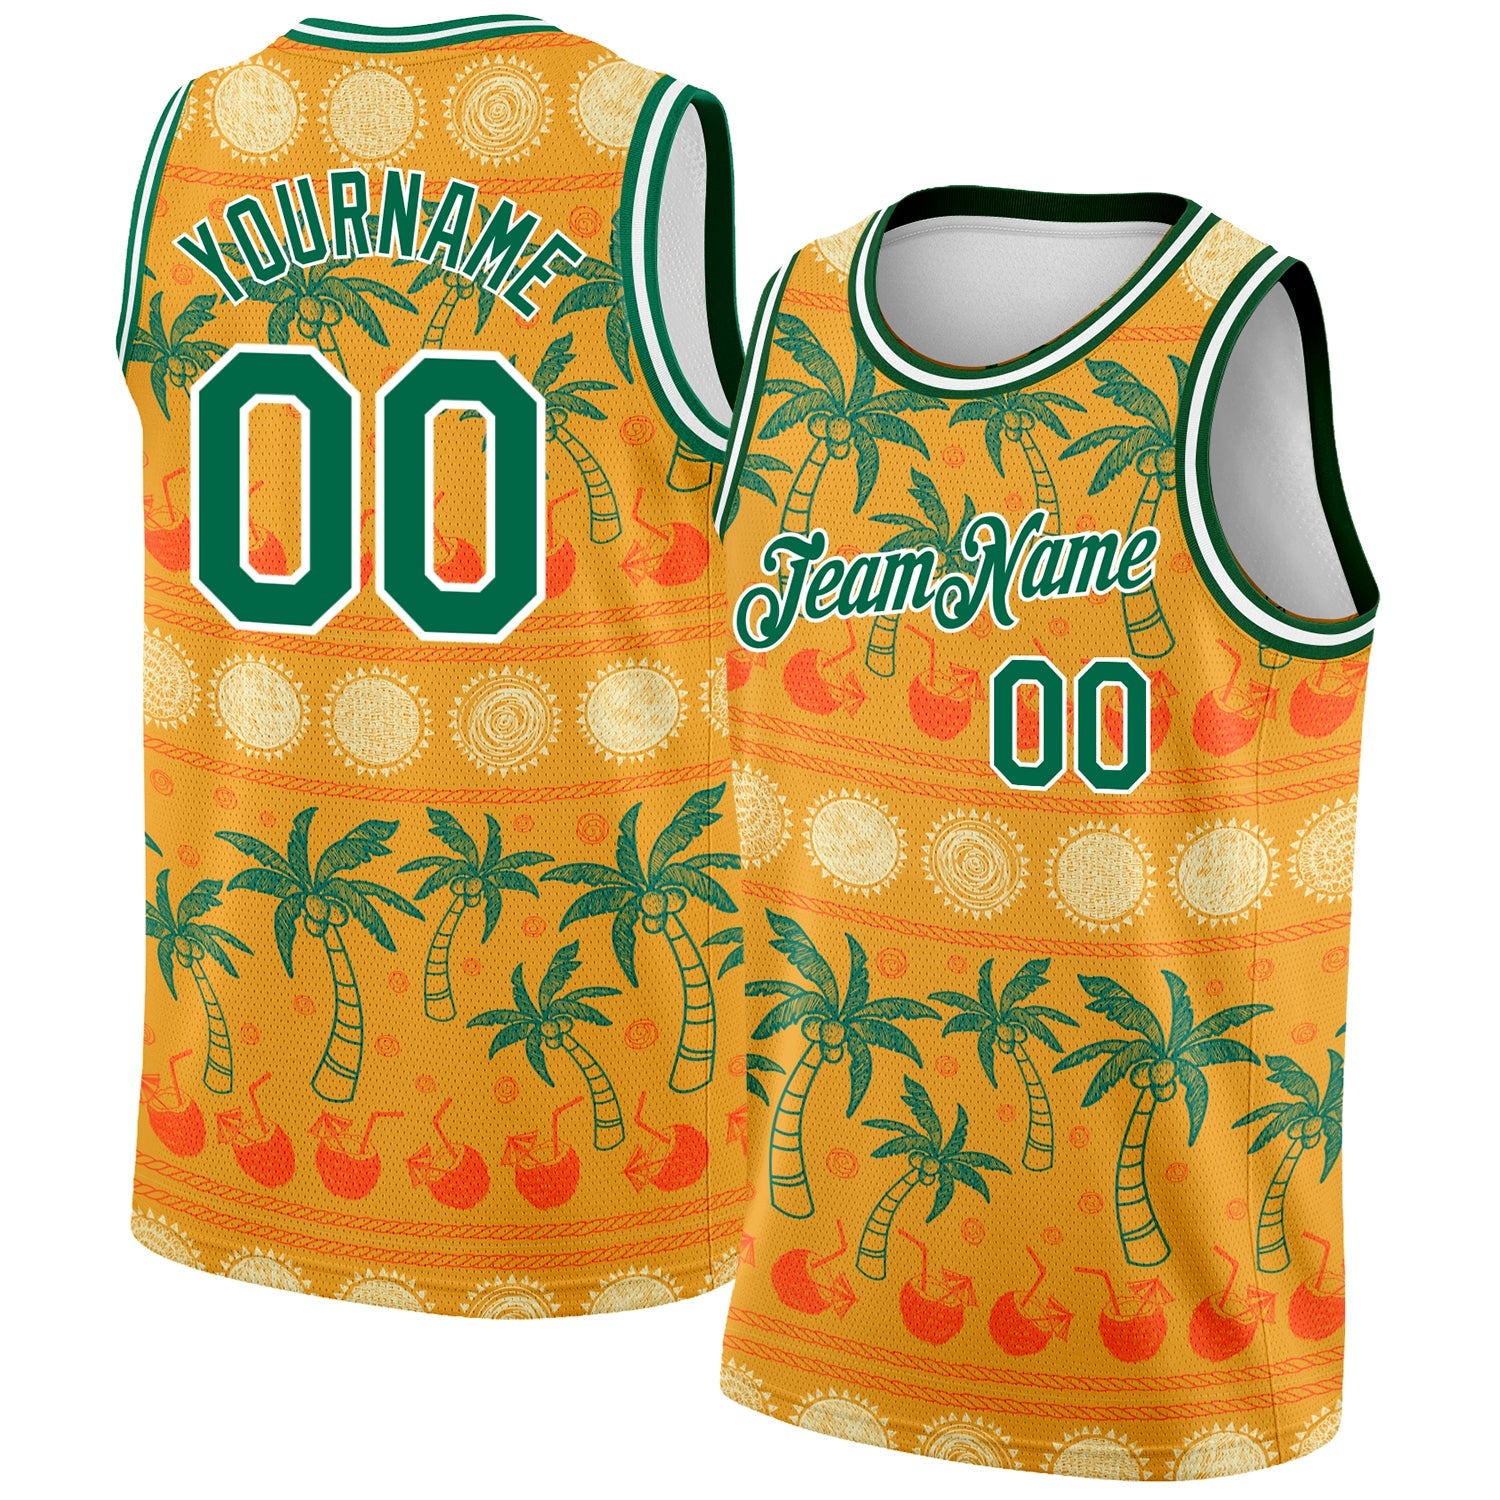 Benutzerdefinierte Bay Orange Kelly Grün-Weiß 3D-Muster Hawaii Beach Palmen Authentisches Basketballtrikot